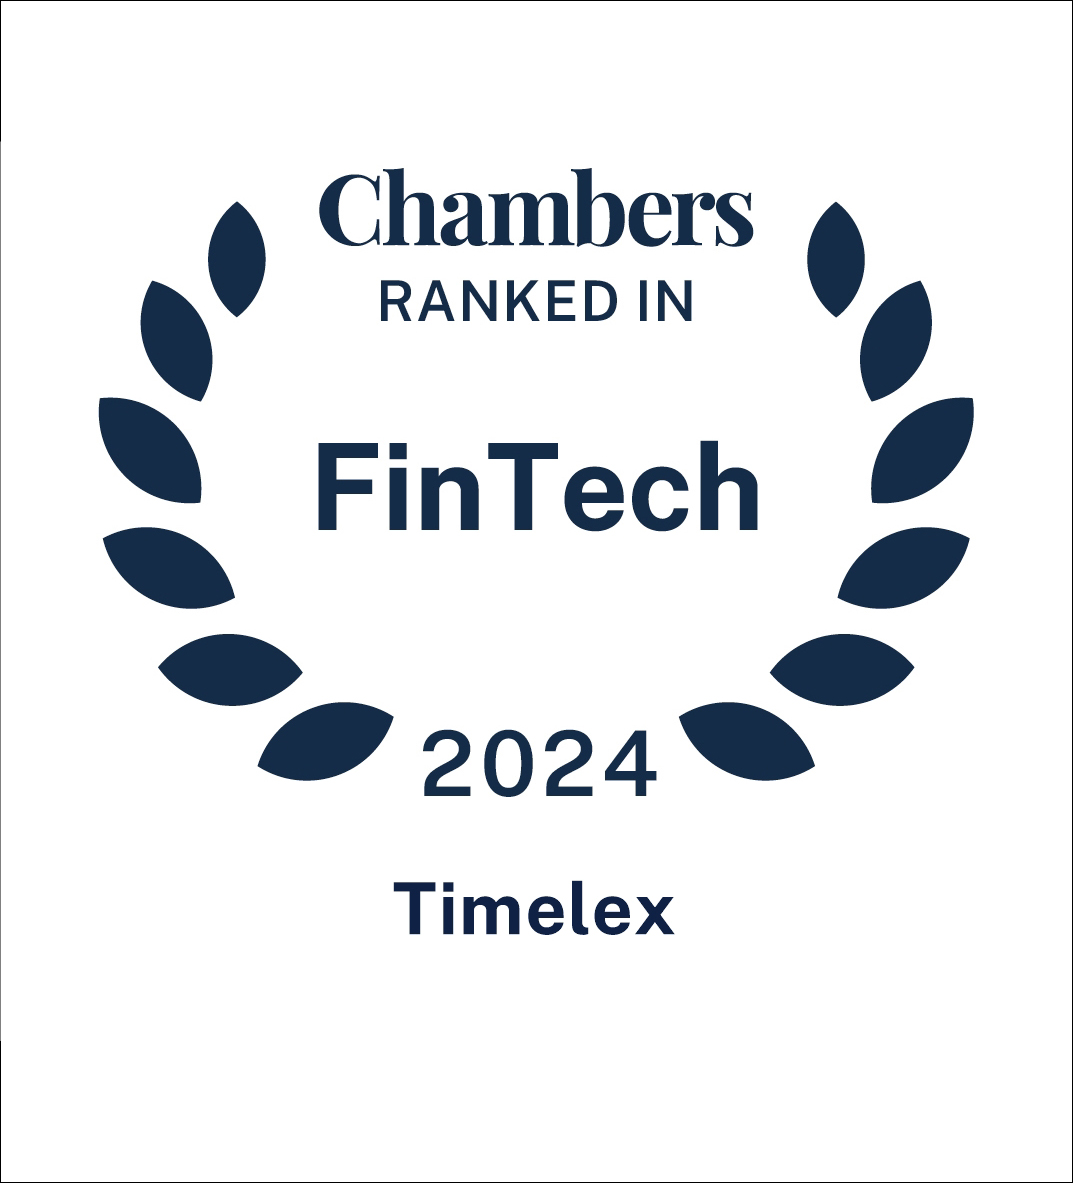 Chambers FinTech Timelex 2024